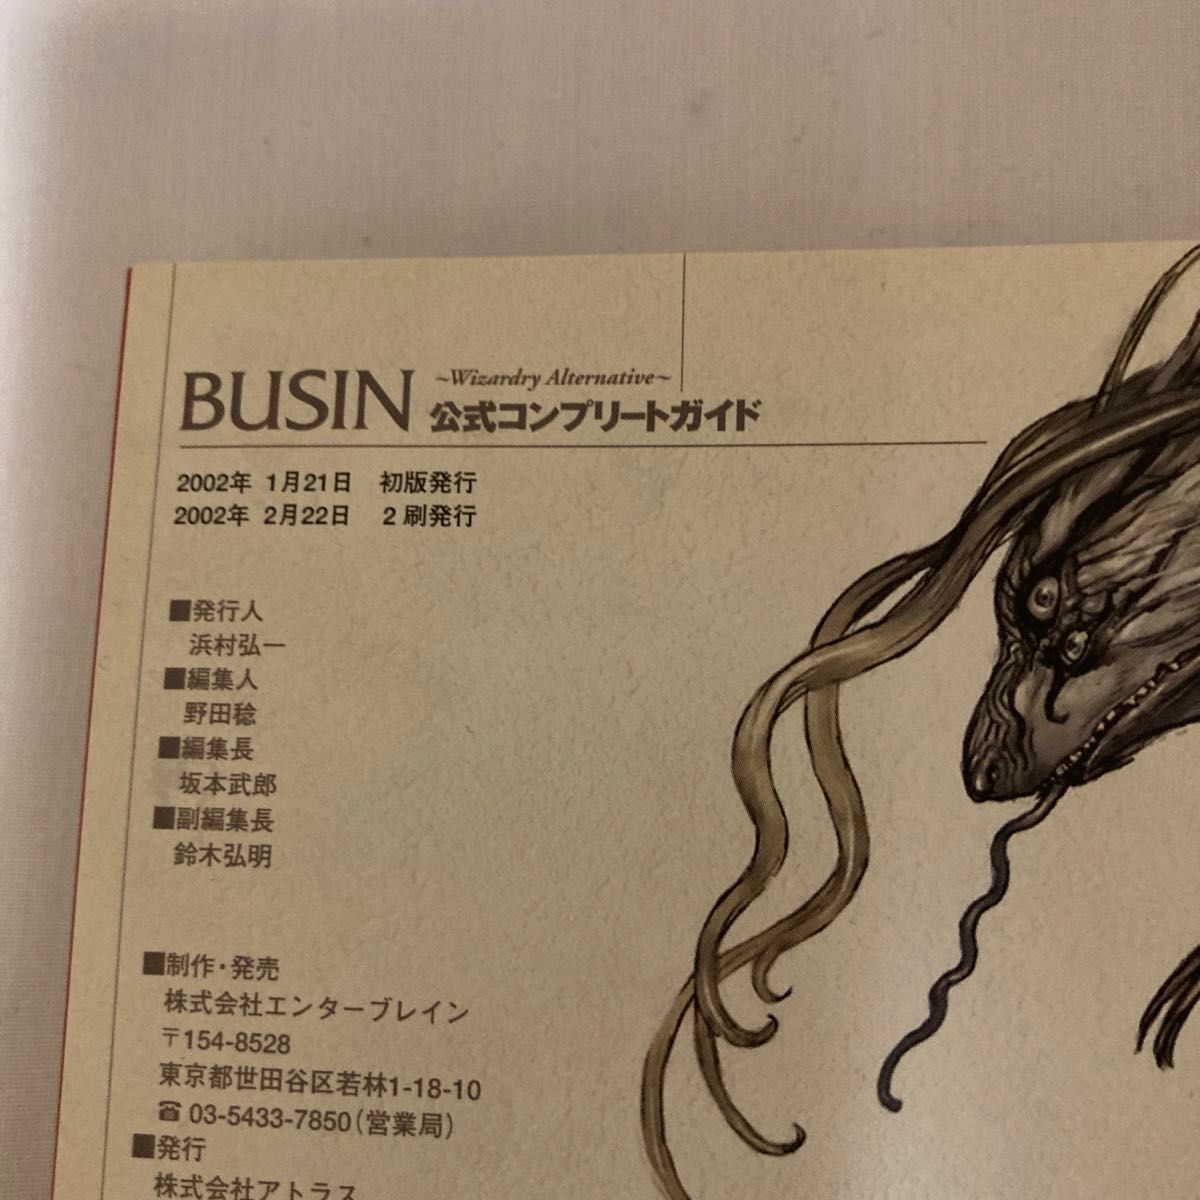 Busin～wizardry alternative～公式コンプリートガイド